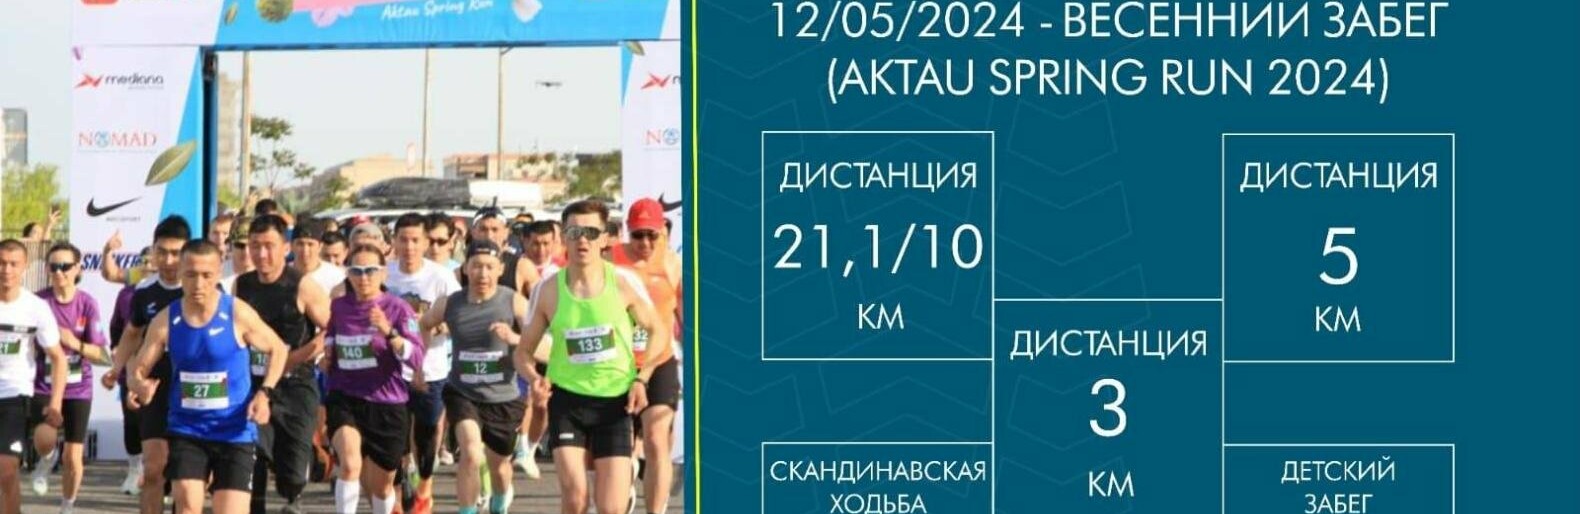         Aktau Spring Run  2024